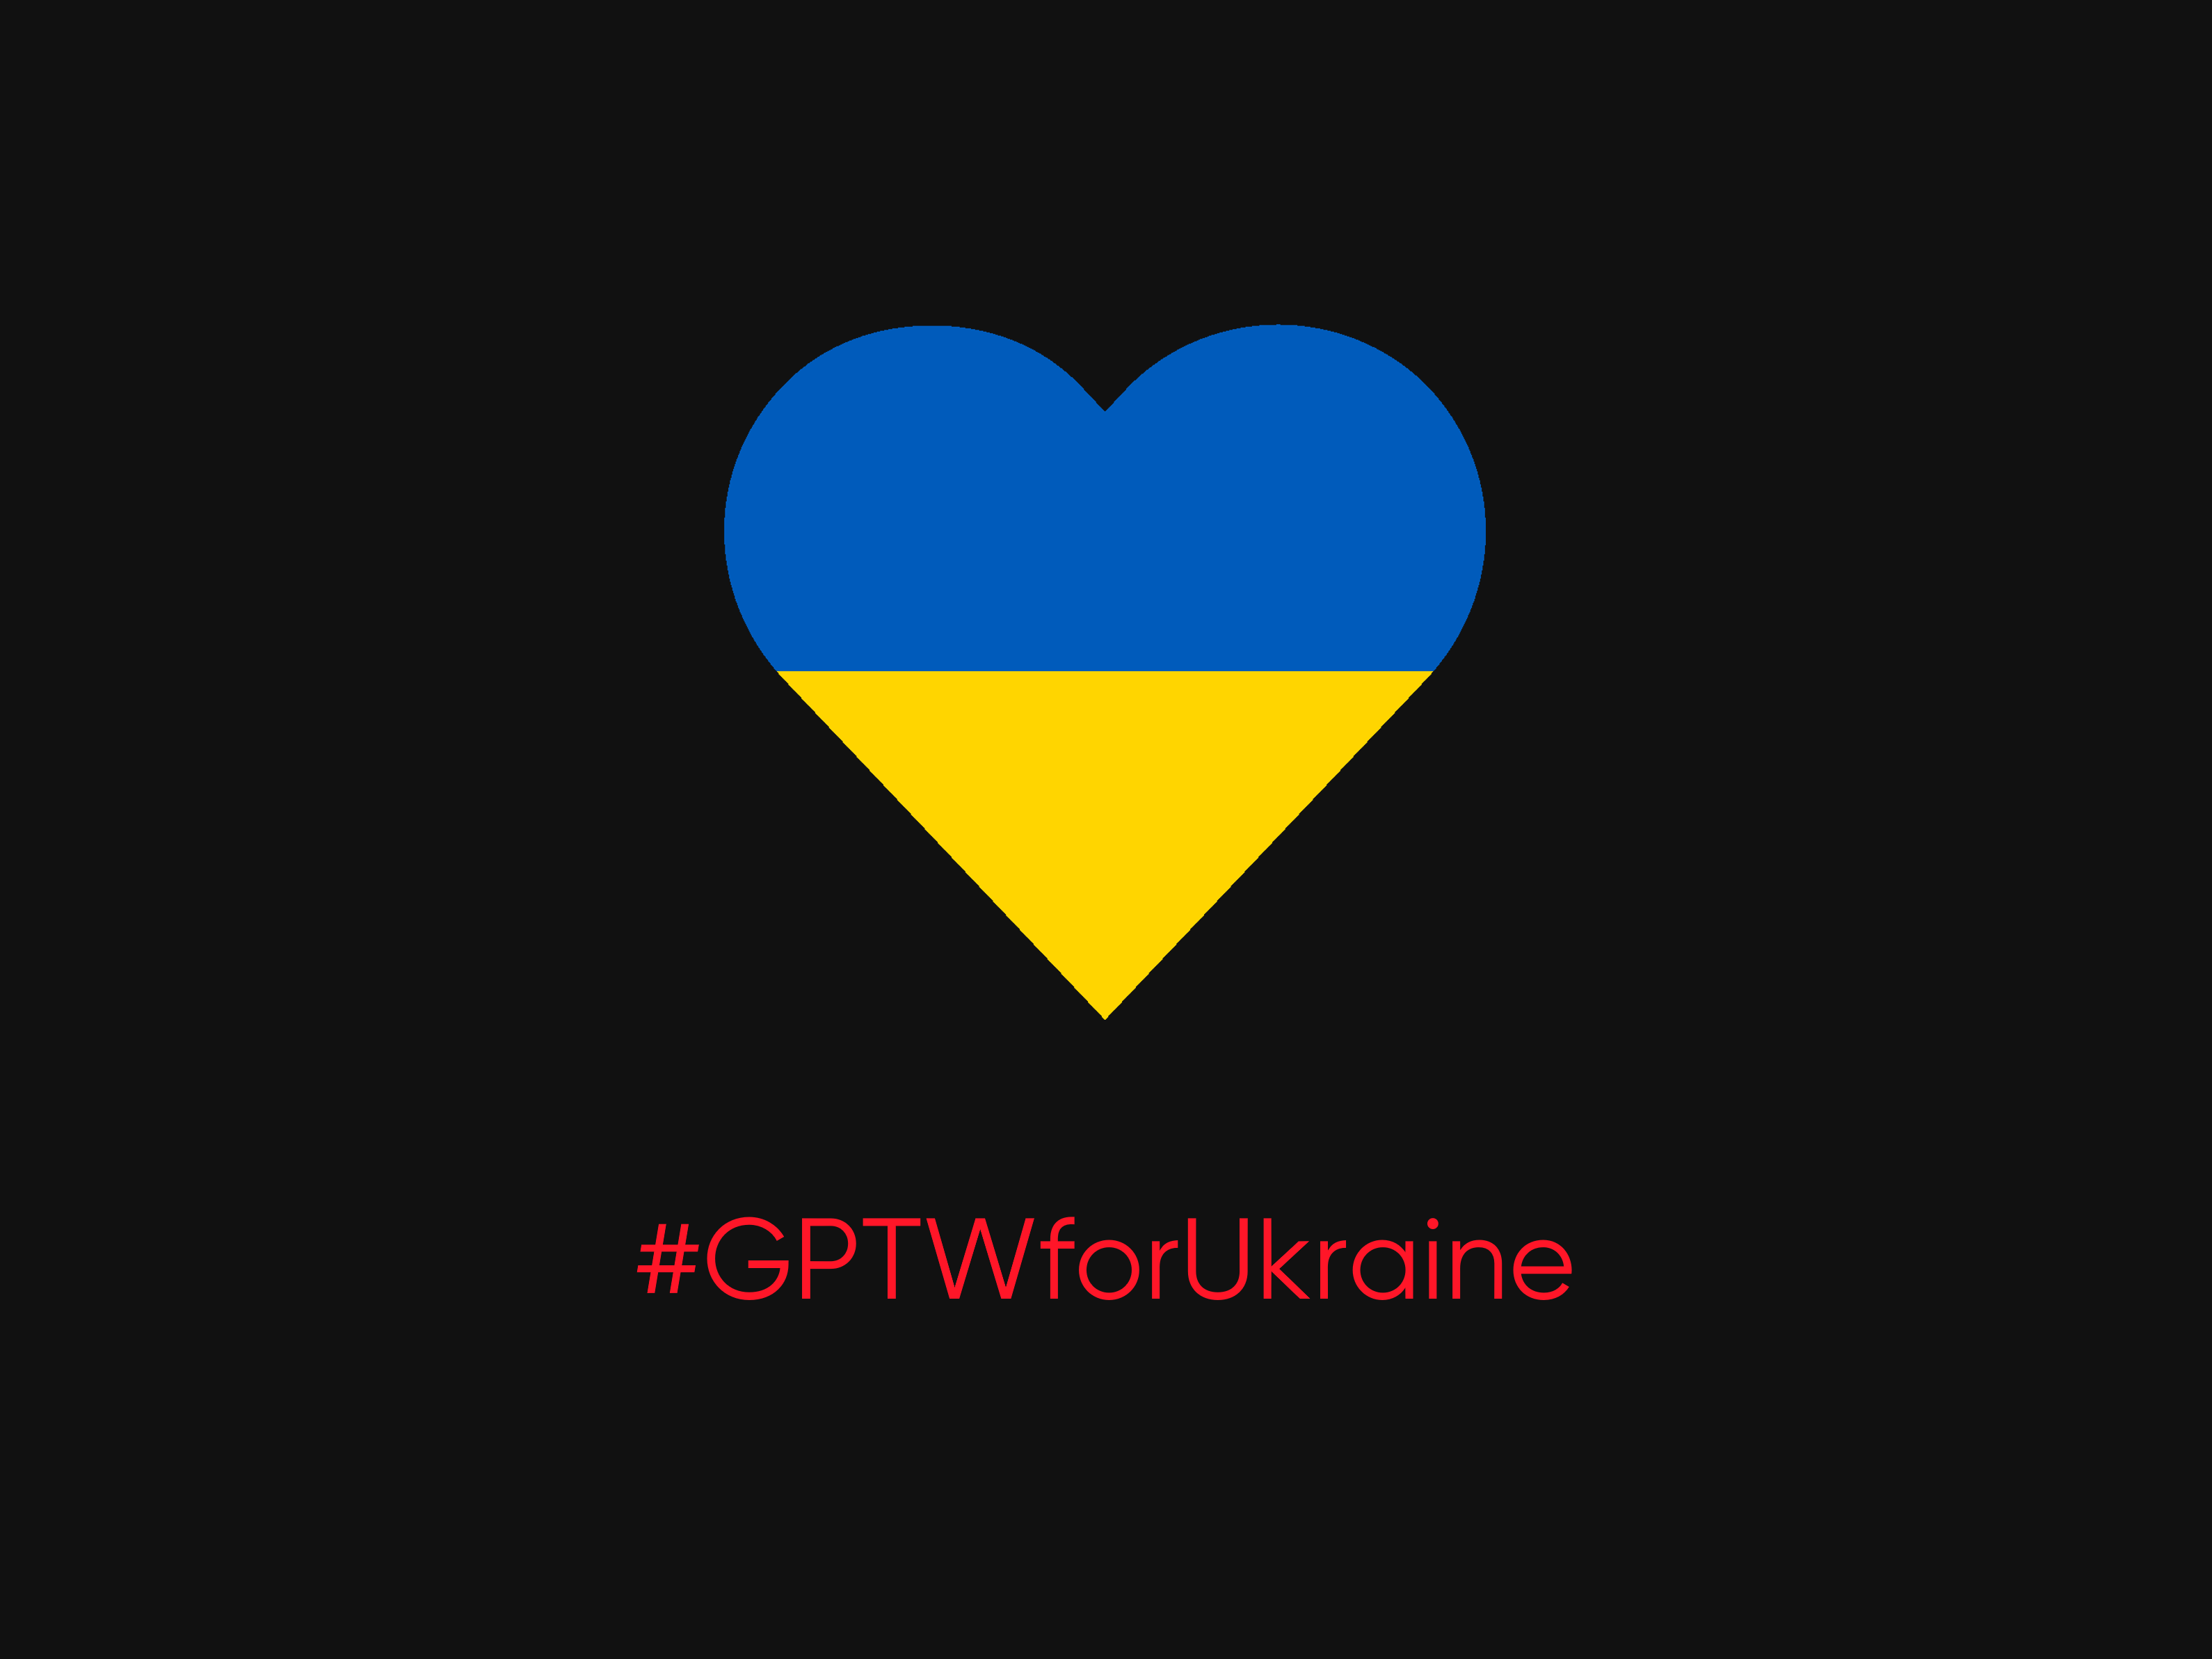  #GPTWforUkraine